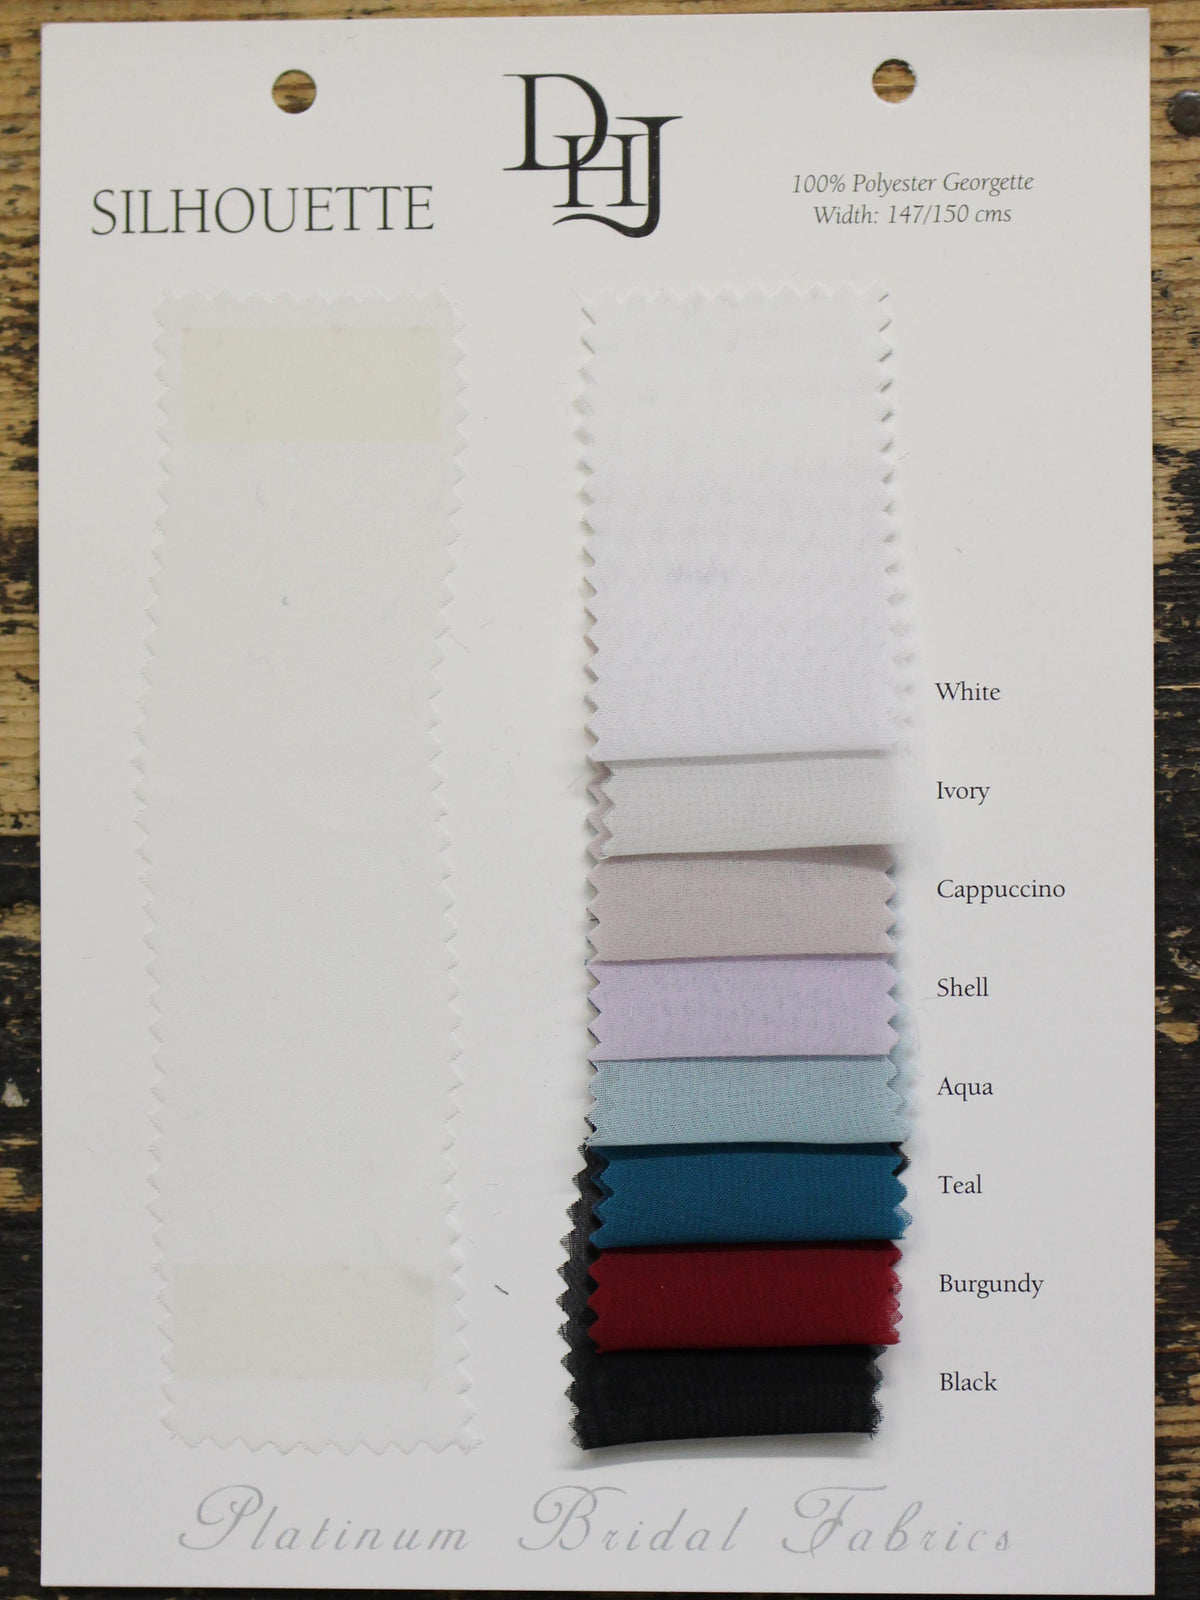 Carte à nuances de georgettes en polyester - Silhouette